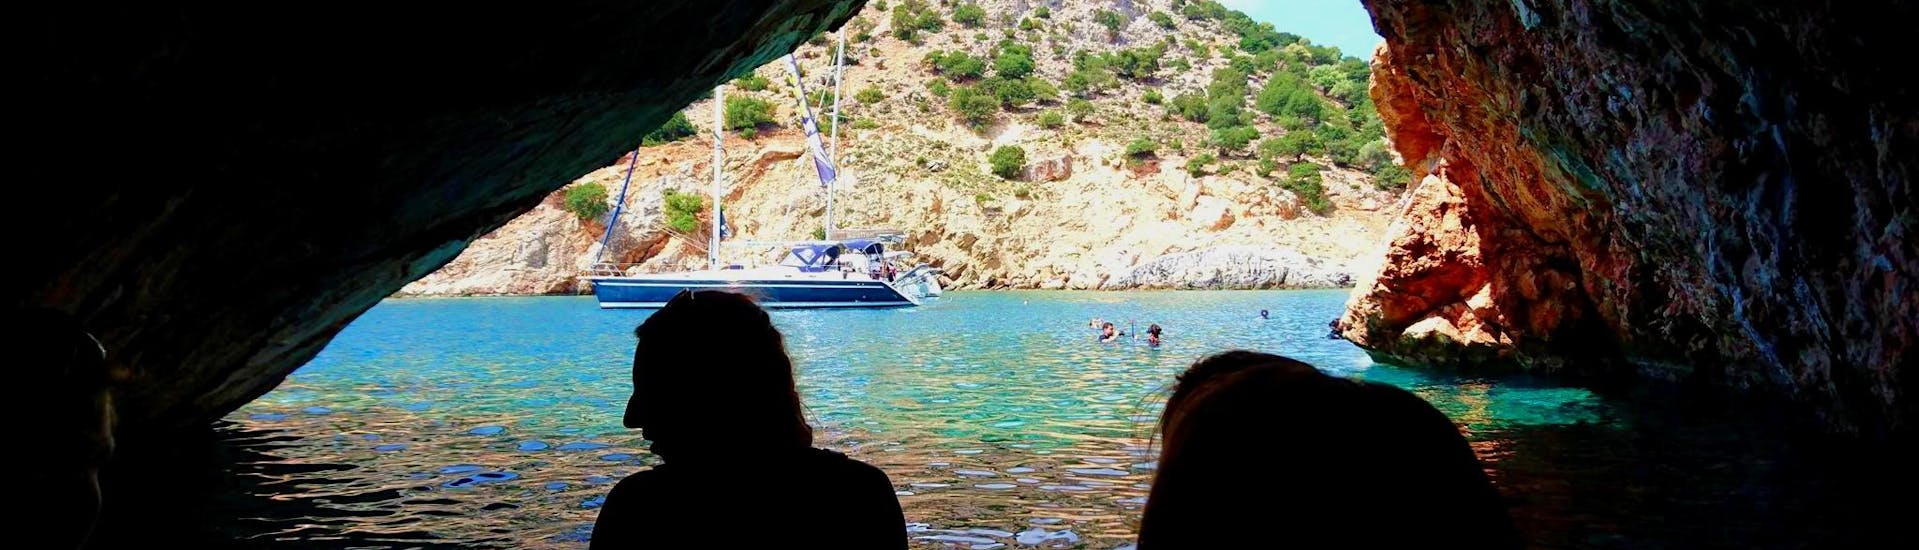 Gita in barca a vela da Naxos (Town) con bagno in mare e visita turistica.